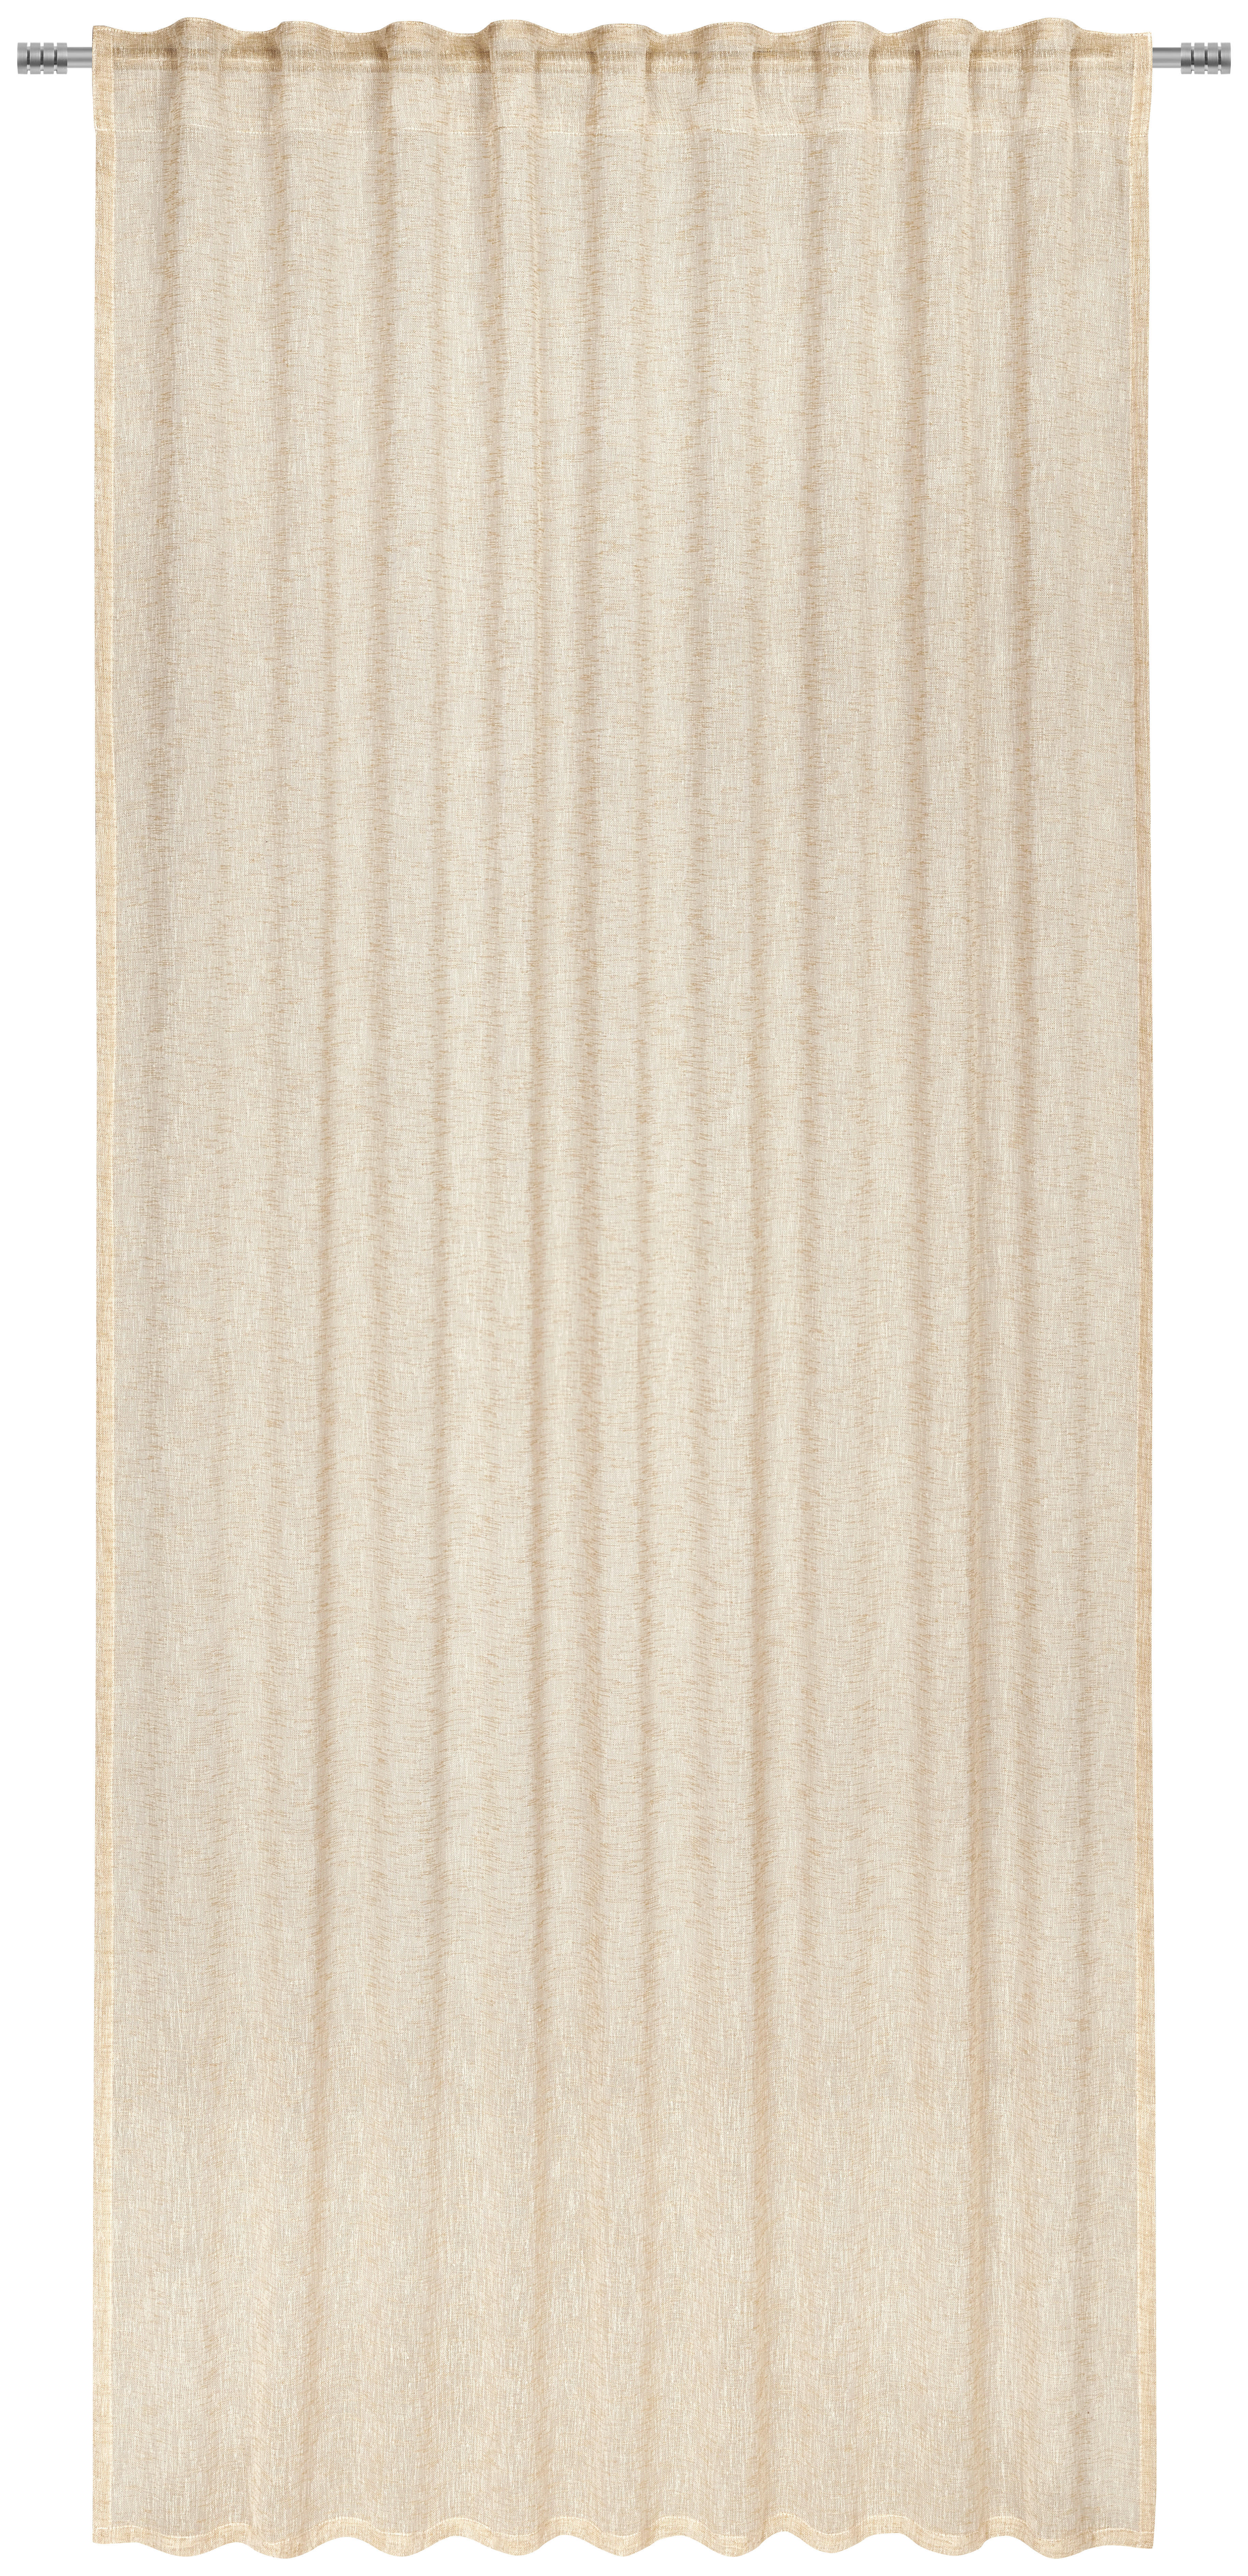 KÉSZFÜGGÖNY Részben áttetsző  - Sárga, Basics, Textil (140/245cm) - Esposa